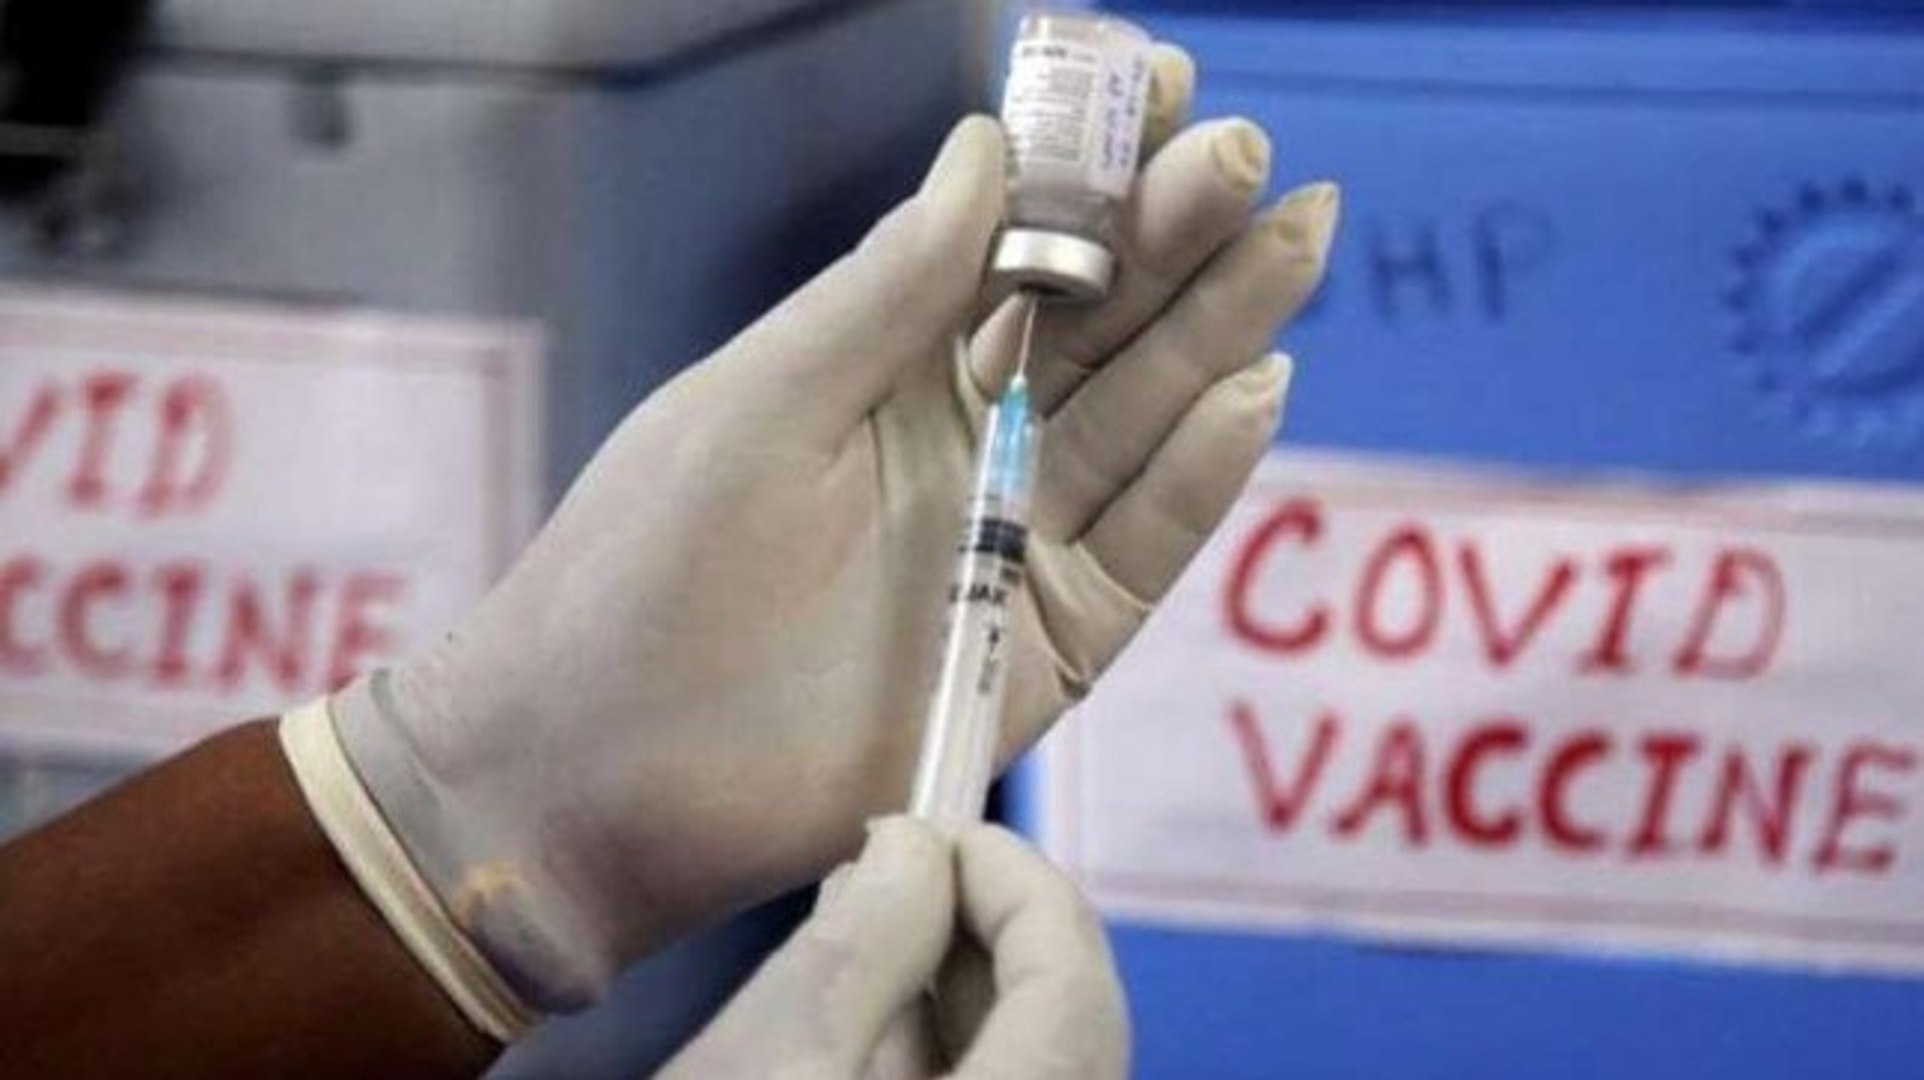 दुनिया में सबसे ज़्यादा टीका उत्पादन क्षमता, फिर भी भारत अपनी जनता को टीका देने में नाकाम क्यों है?